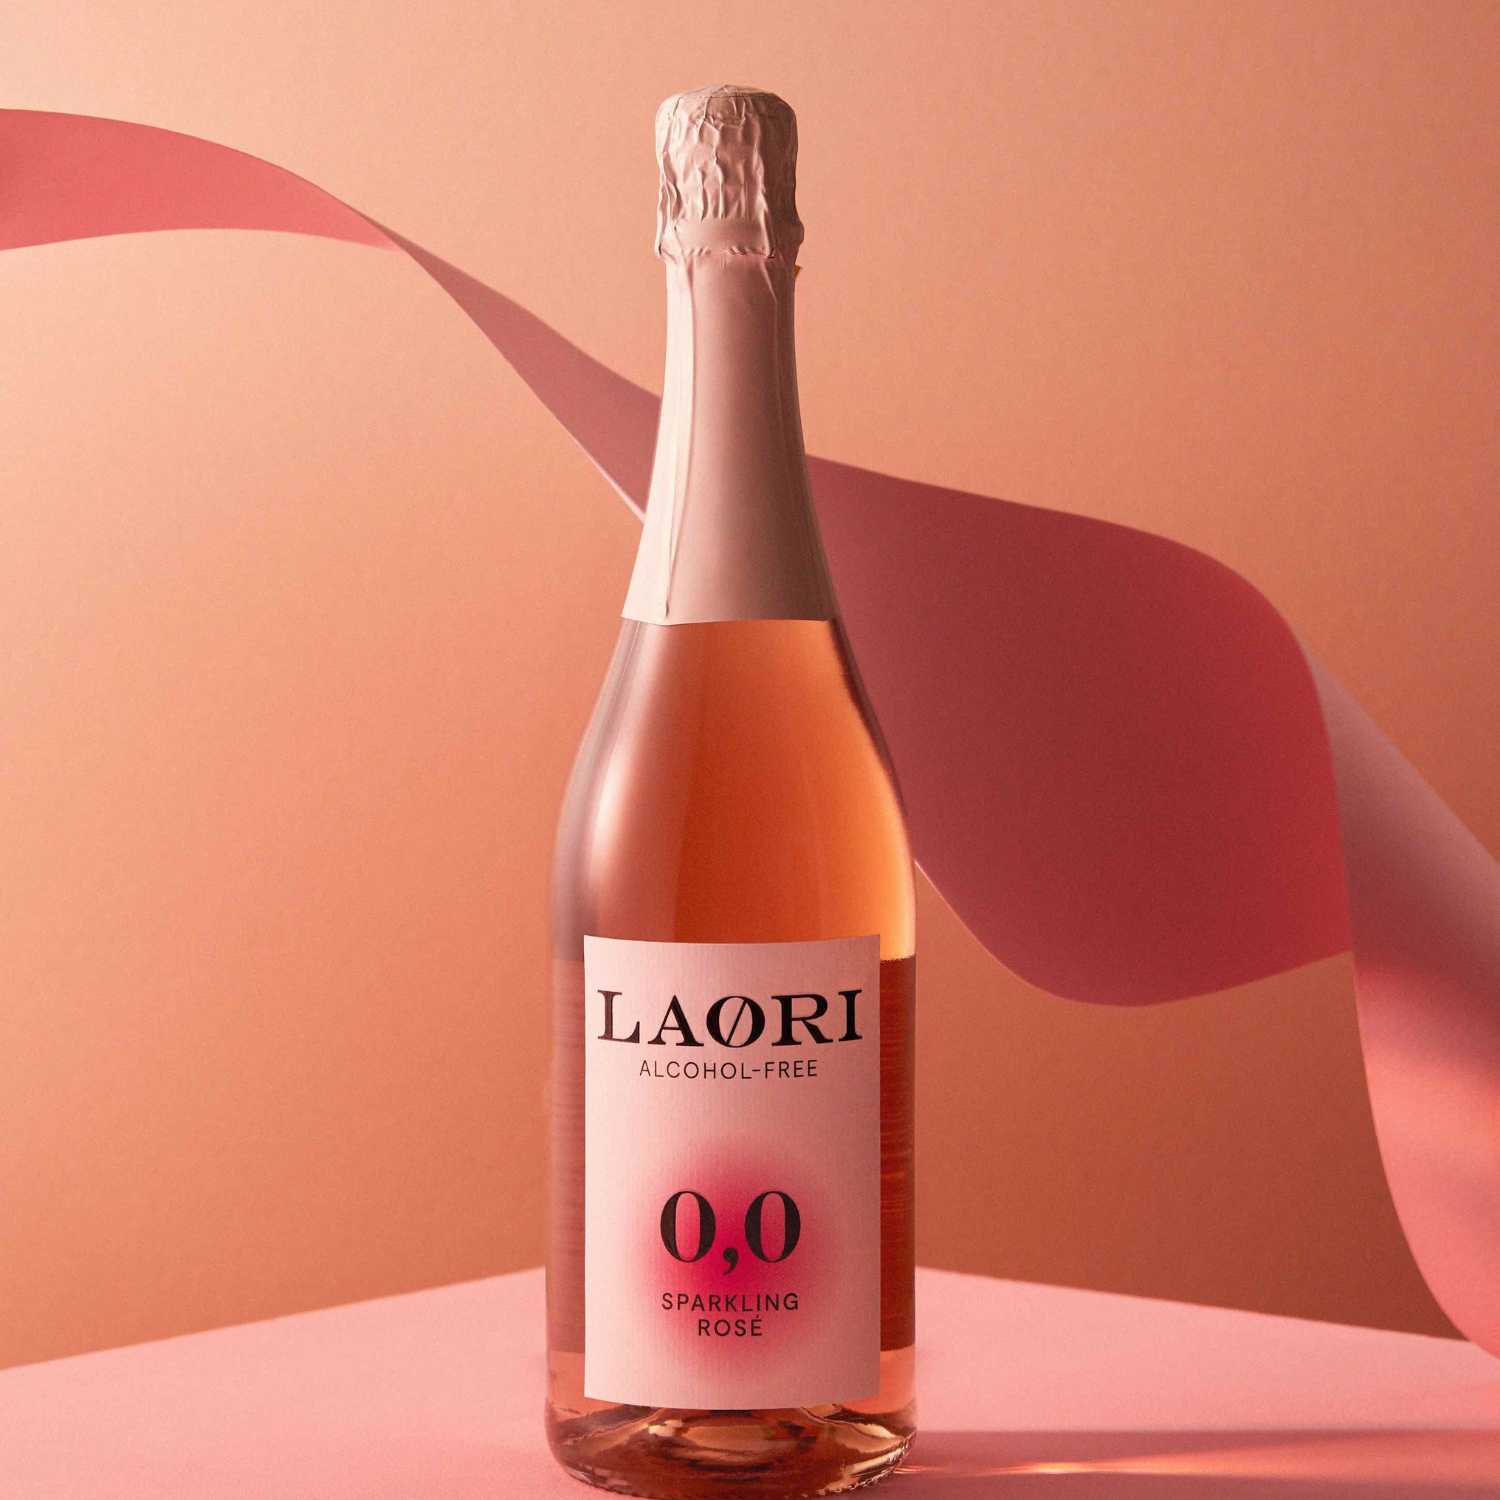 Laori Sparkling Rosé (0,75L)